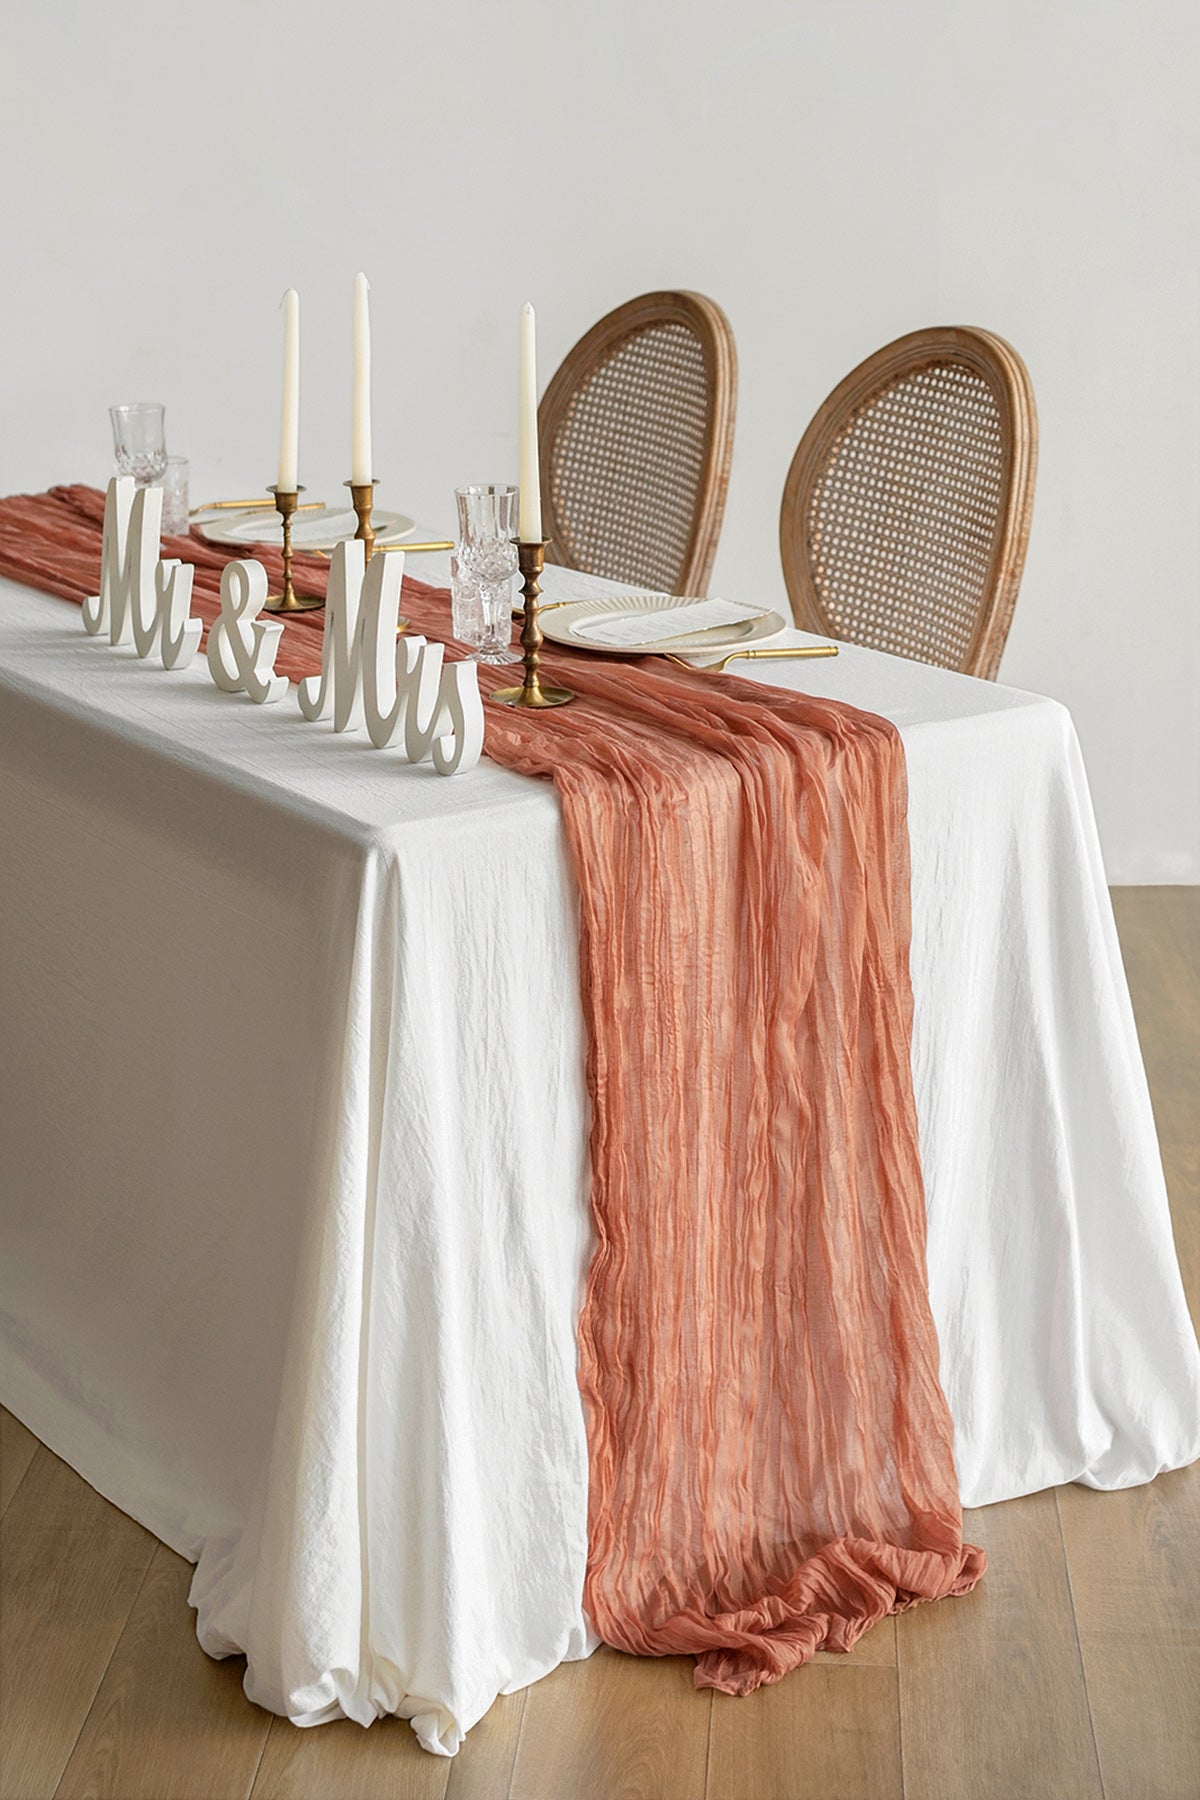 Table linens in Sunset Terracotta